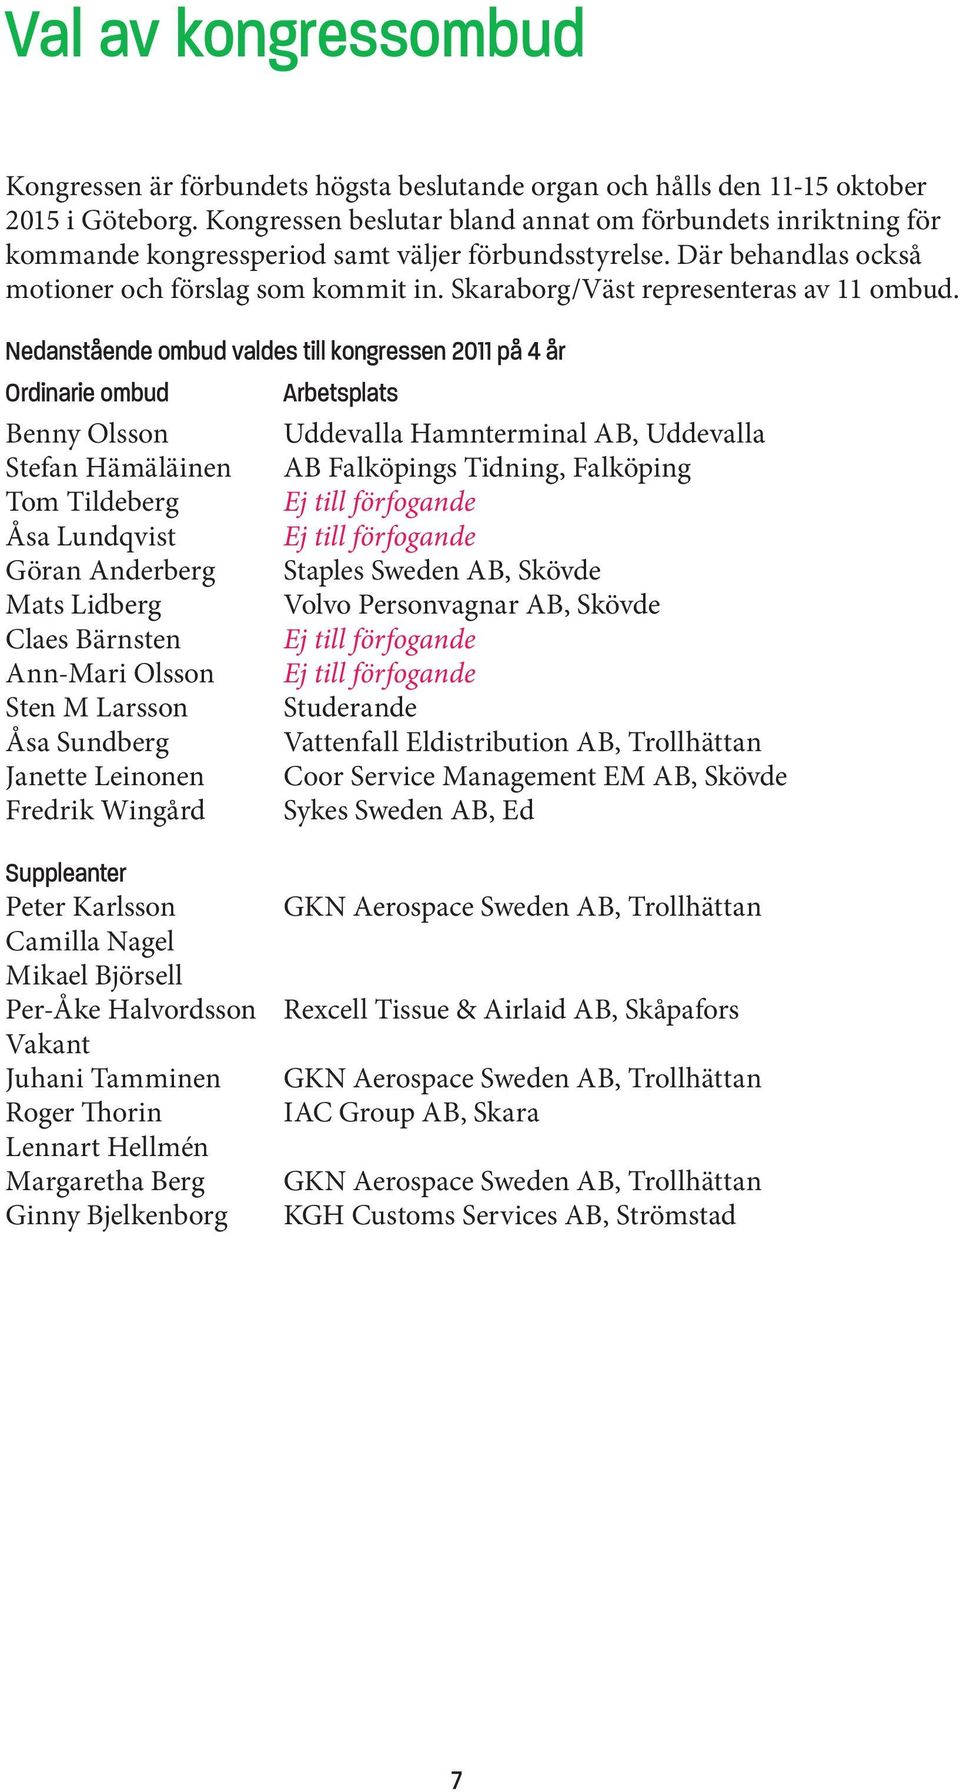 Skaraborg/Väst representeras av 11 ombud.